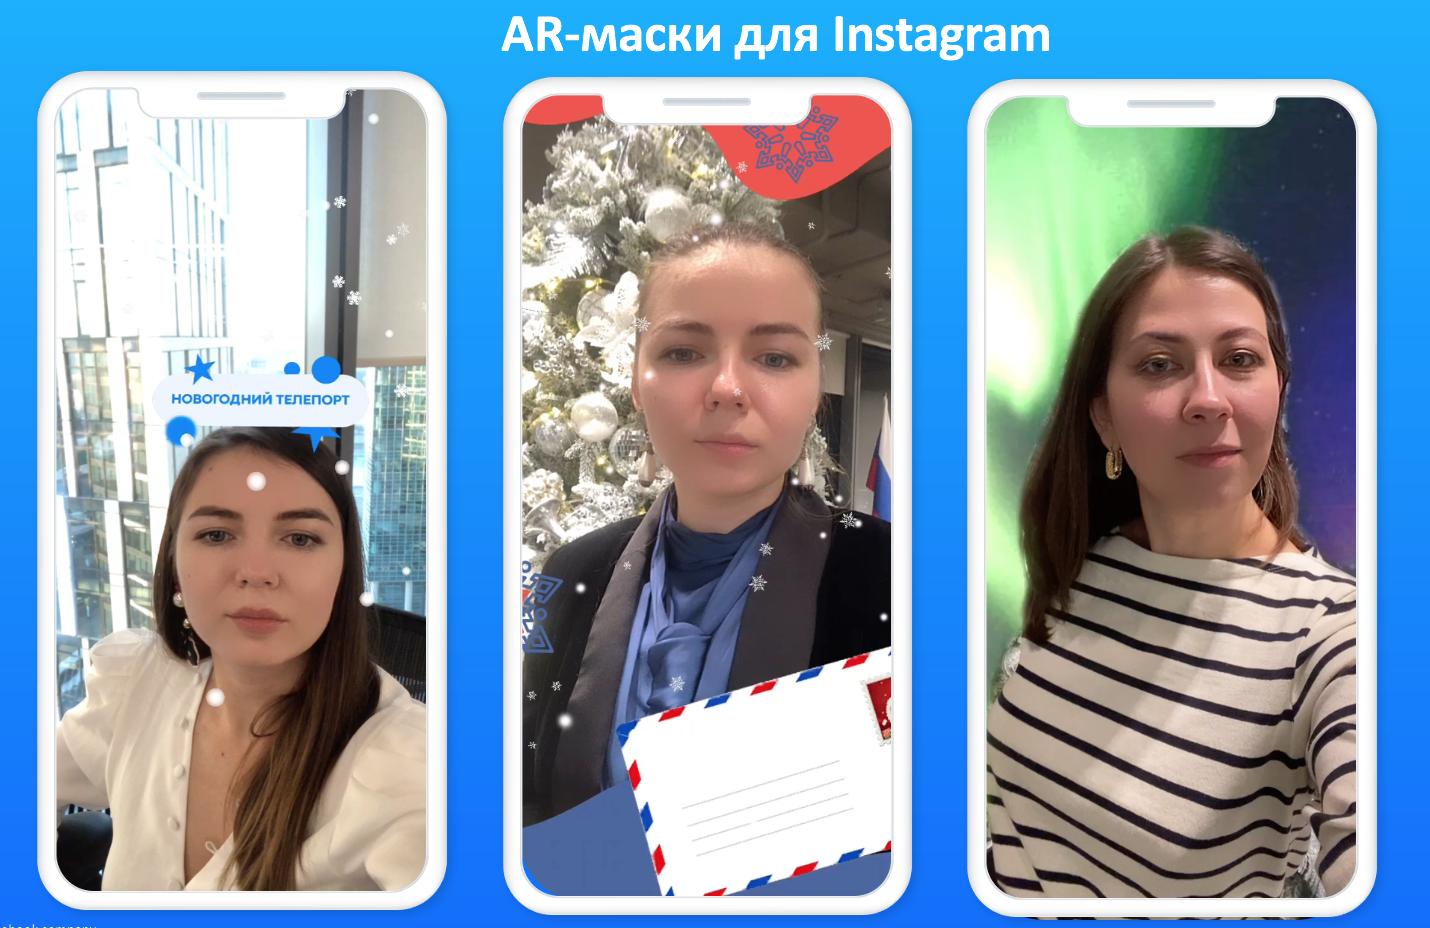 Facebook выпустила AR-маски и добавила зимние направления в чат-бот для поддержки внутреннего туризма в России